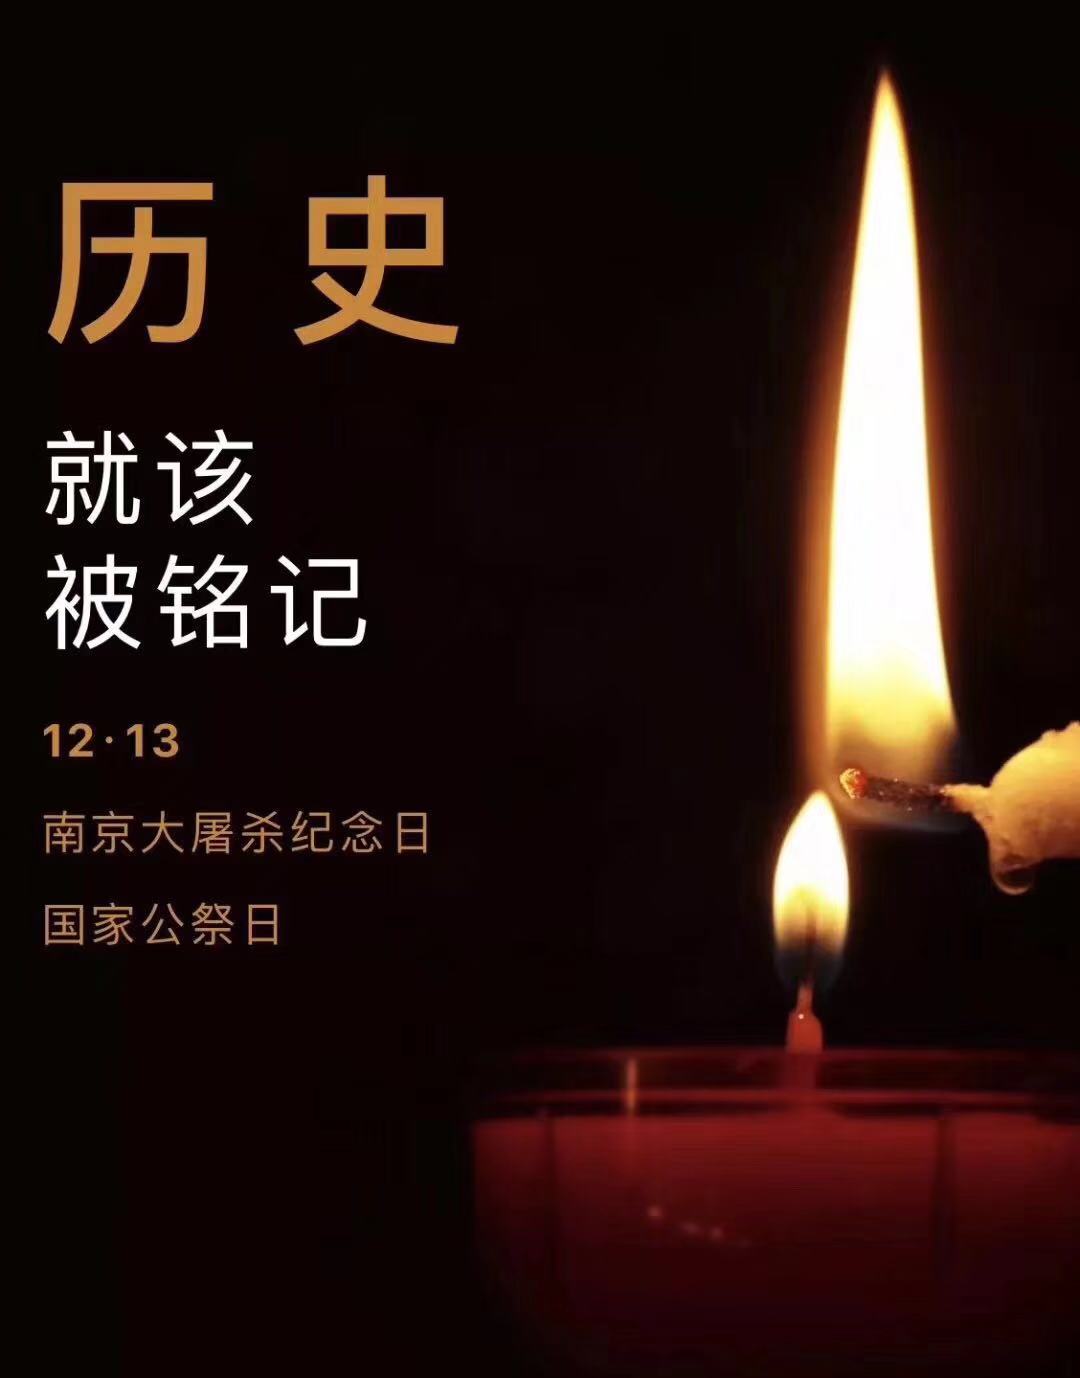 历史不容忘记，吾辈必须自强—纪念南京大屠杀81周年